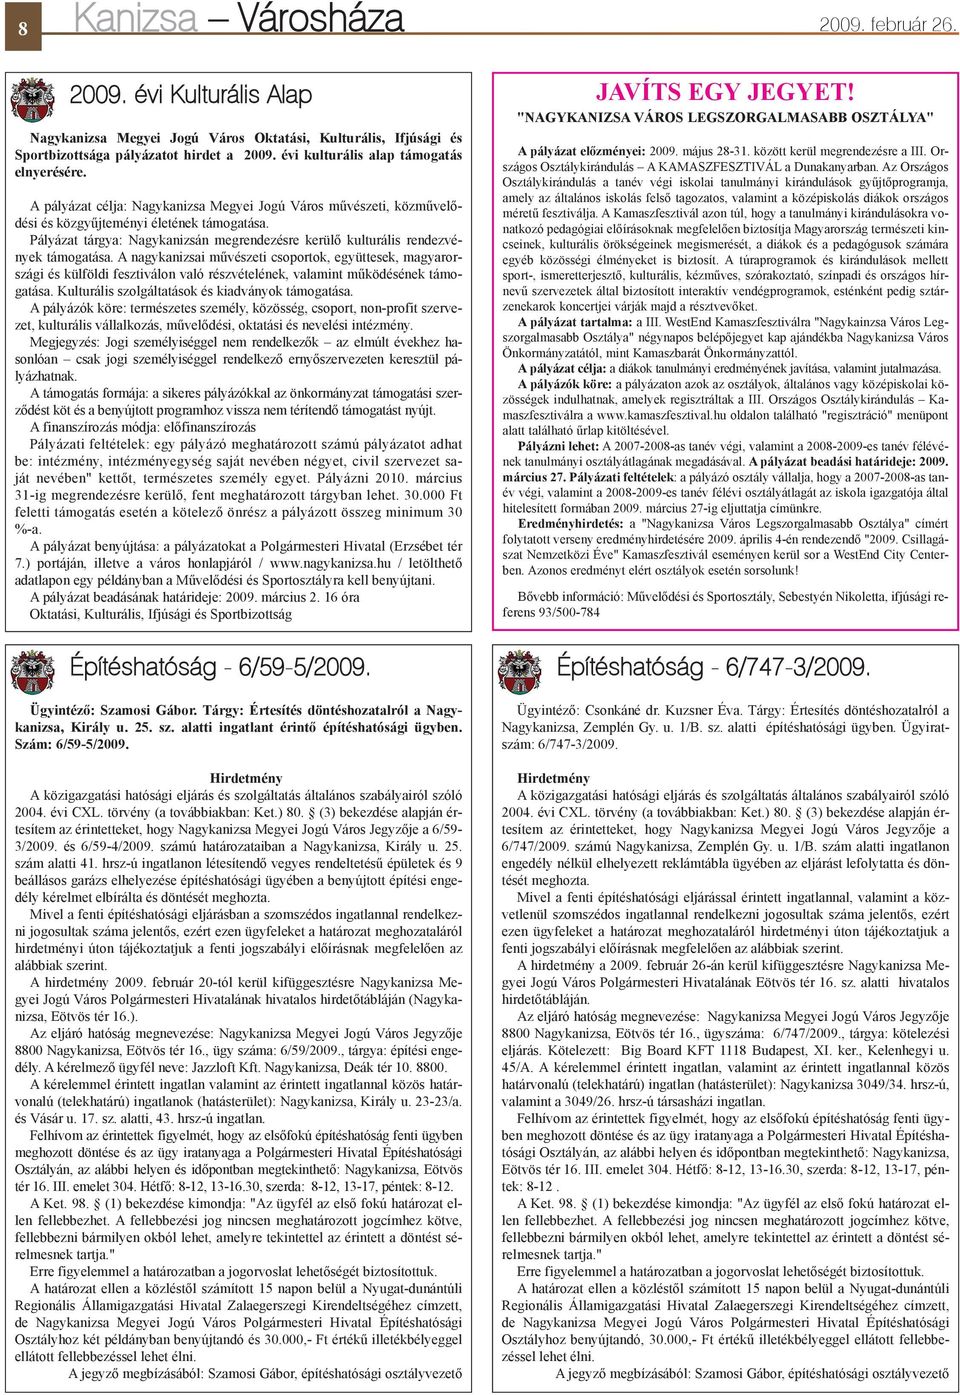 Pályázat tárgya: Nagykanizsán megrendezésre kerülõ kulturális rendezvények támogatása.